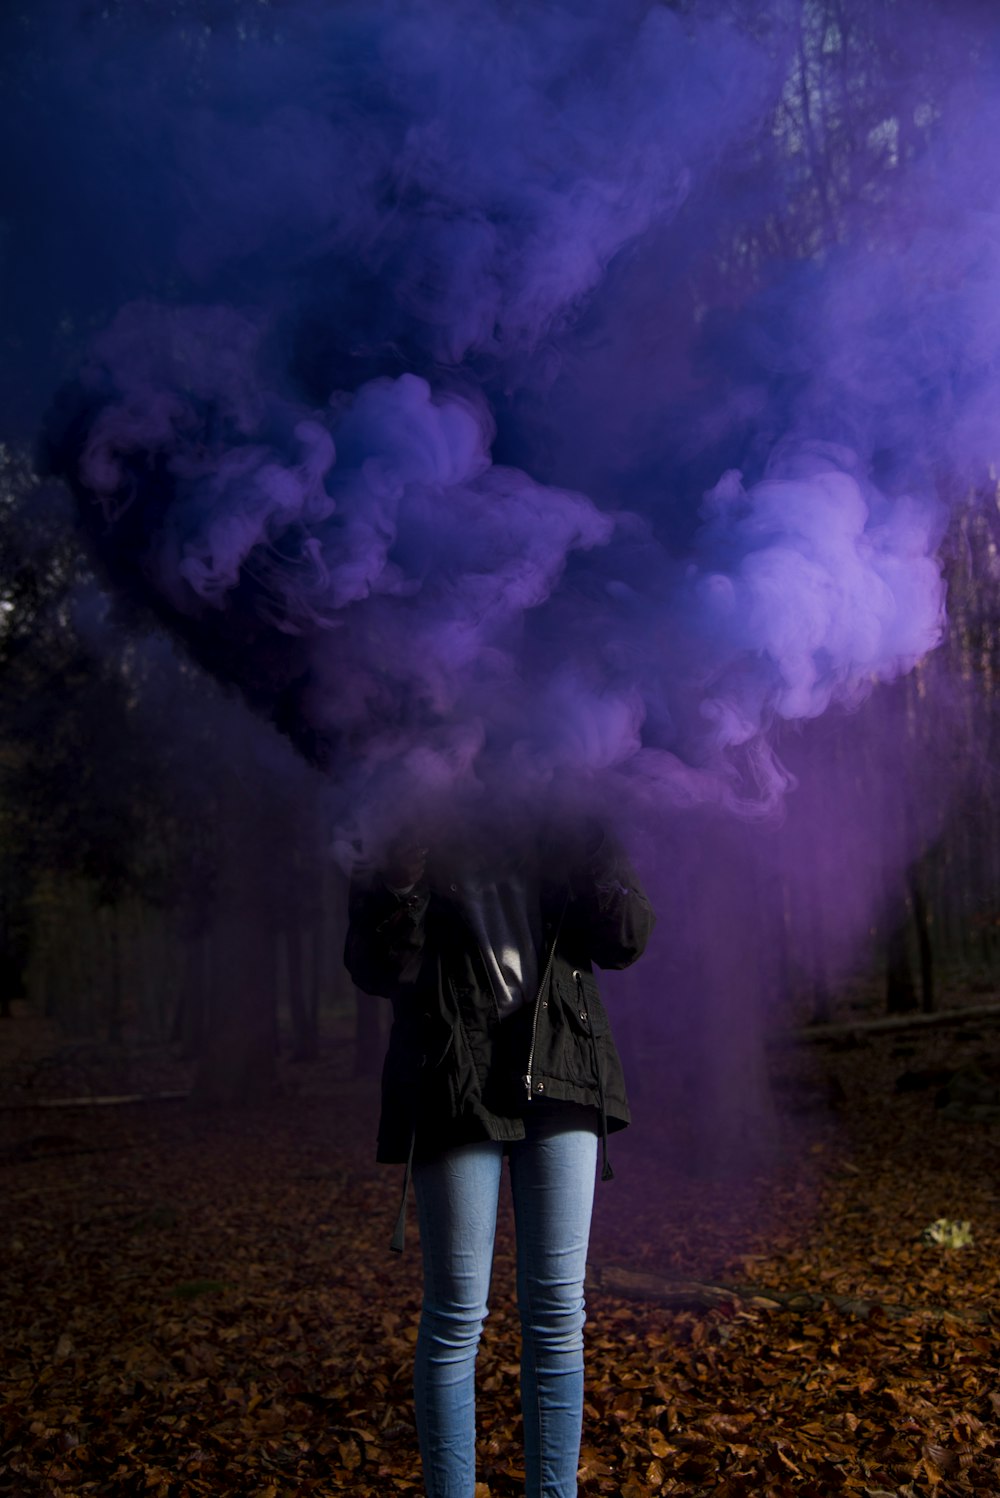 Person in schwarzer Jacke und blauer Jeans, die lila Rauchbombe hält und auf getrockneten Baumblättern steht